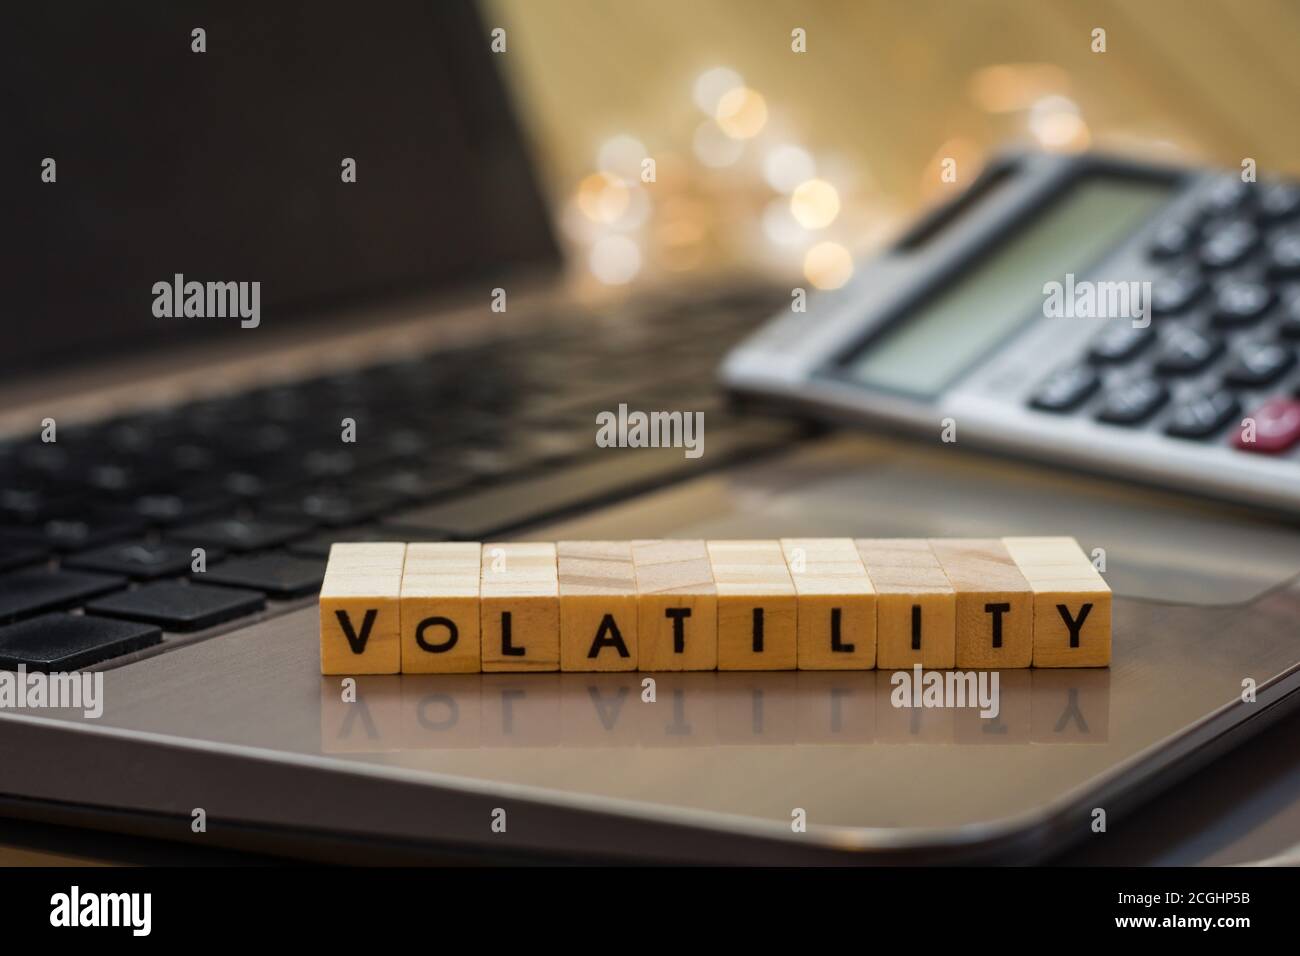 VOLATILITY Letter blockiert Business Finance Konzept auf Laptop-Tastatur  mit Haus und Rechner Stockfotografie - Alamy